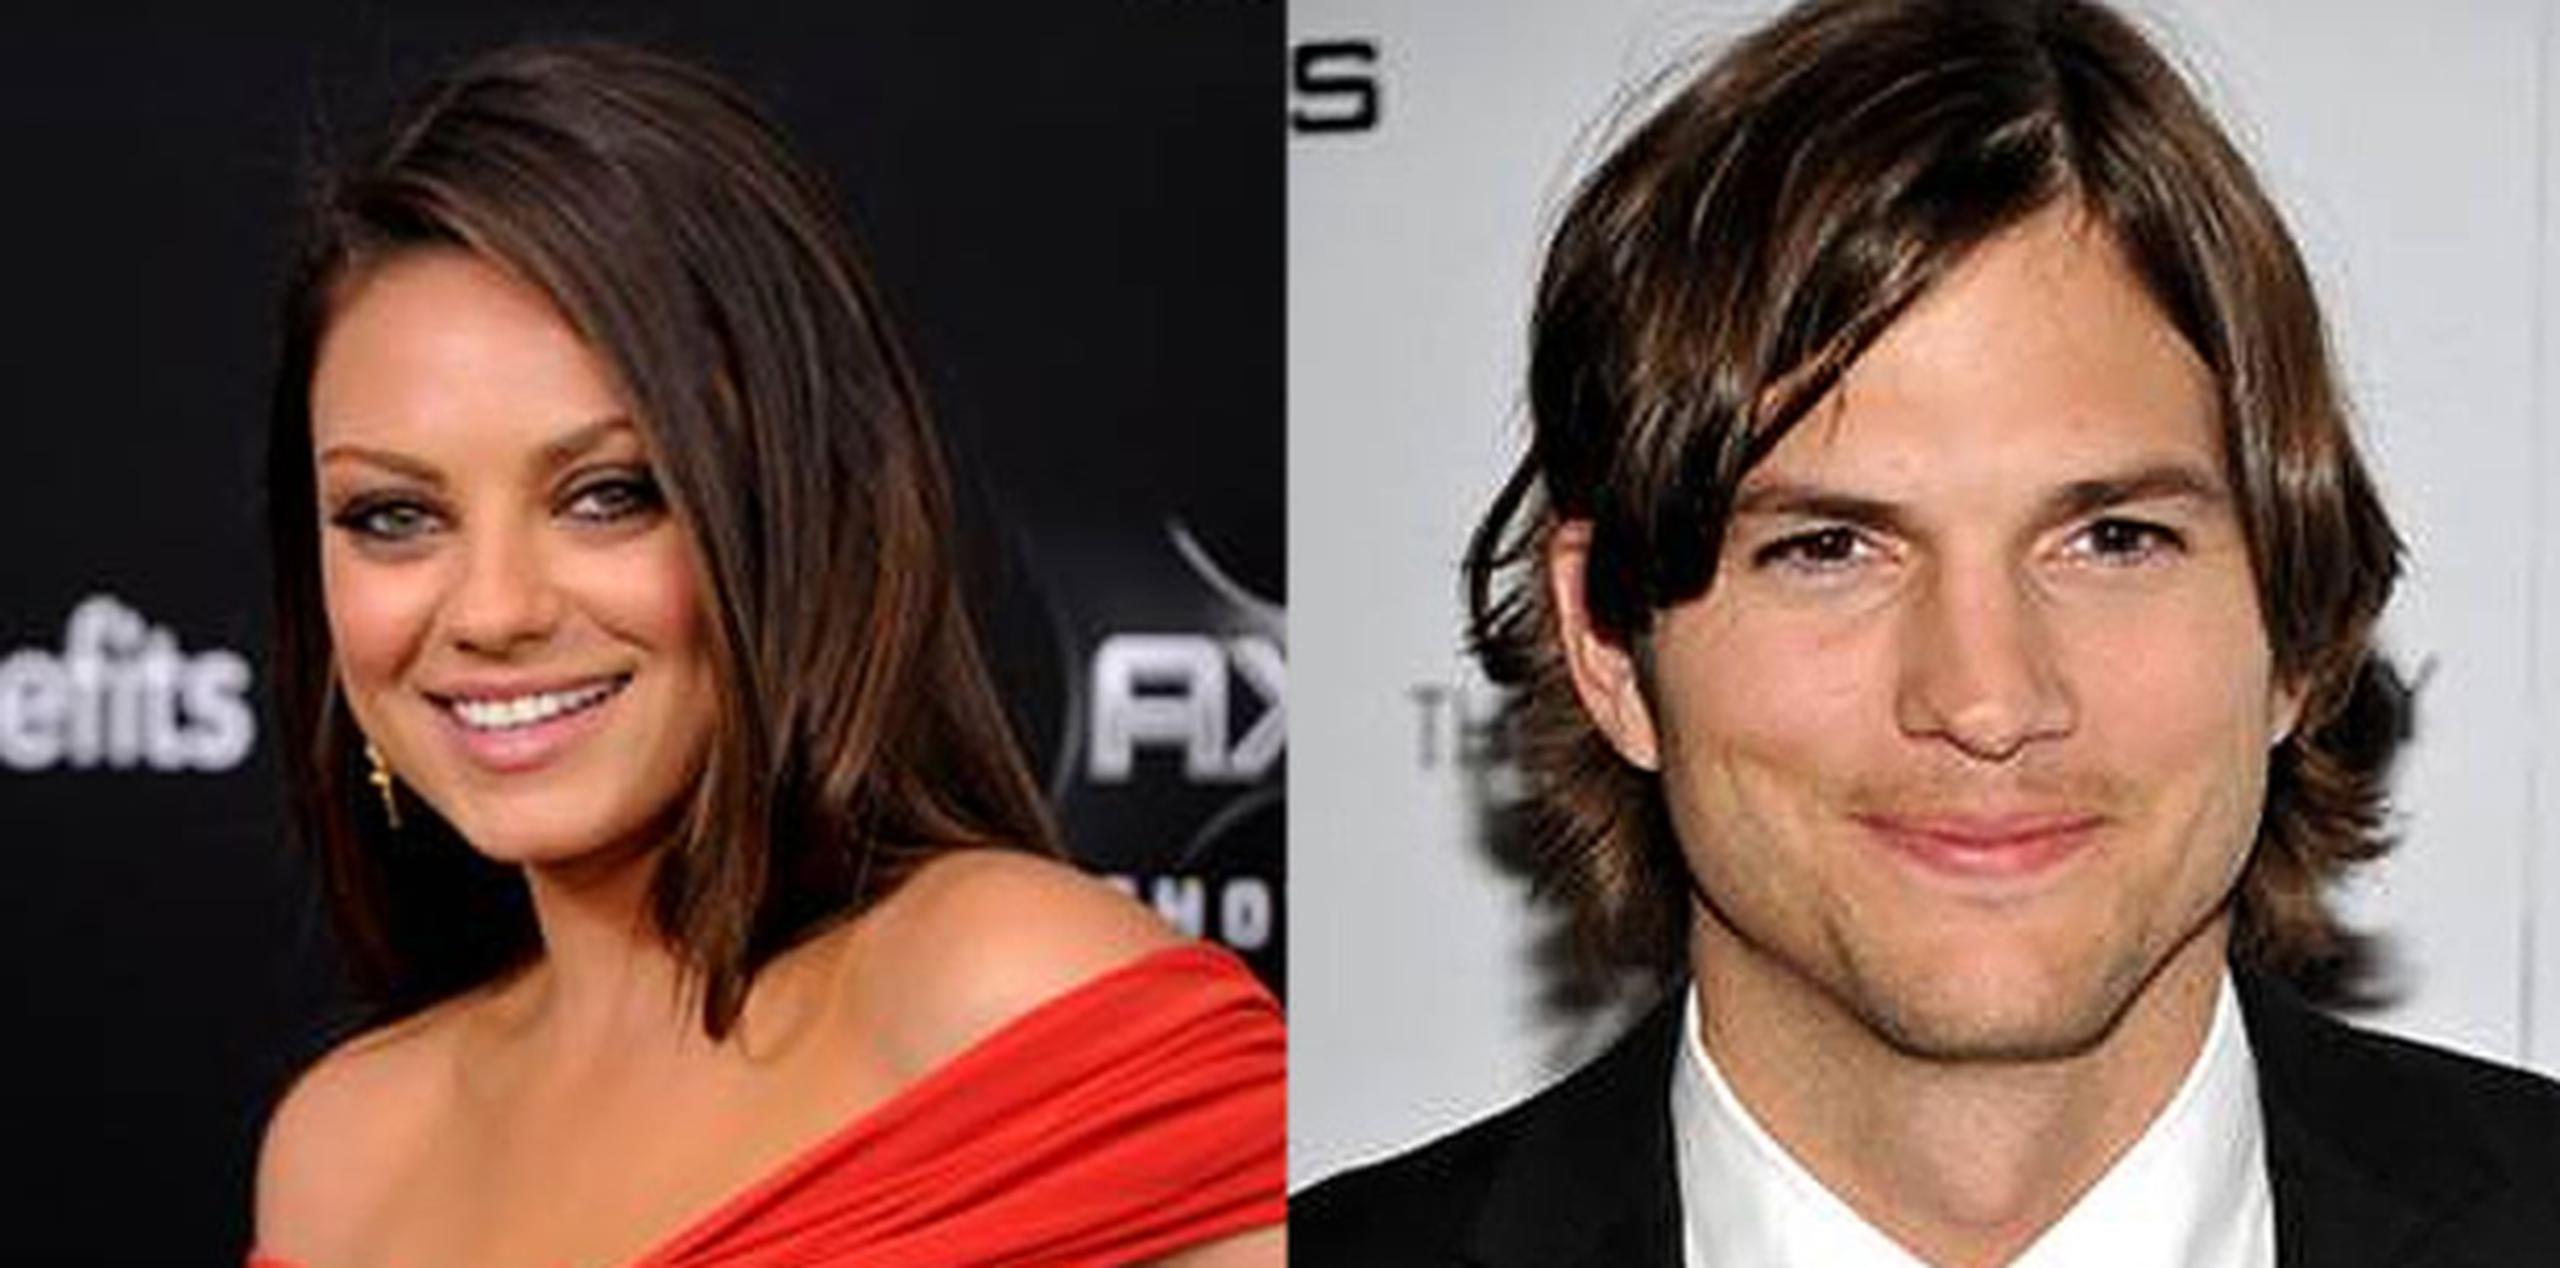 La actriz Mila Kunis se burló de los rumores de compromiso con el actor Ashton Kutcher,pero una fuente aseguró que la pareja planifica oficializarlo.  (Archivo)